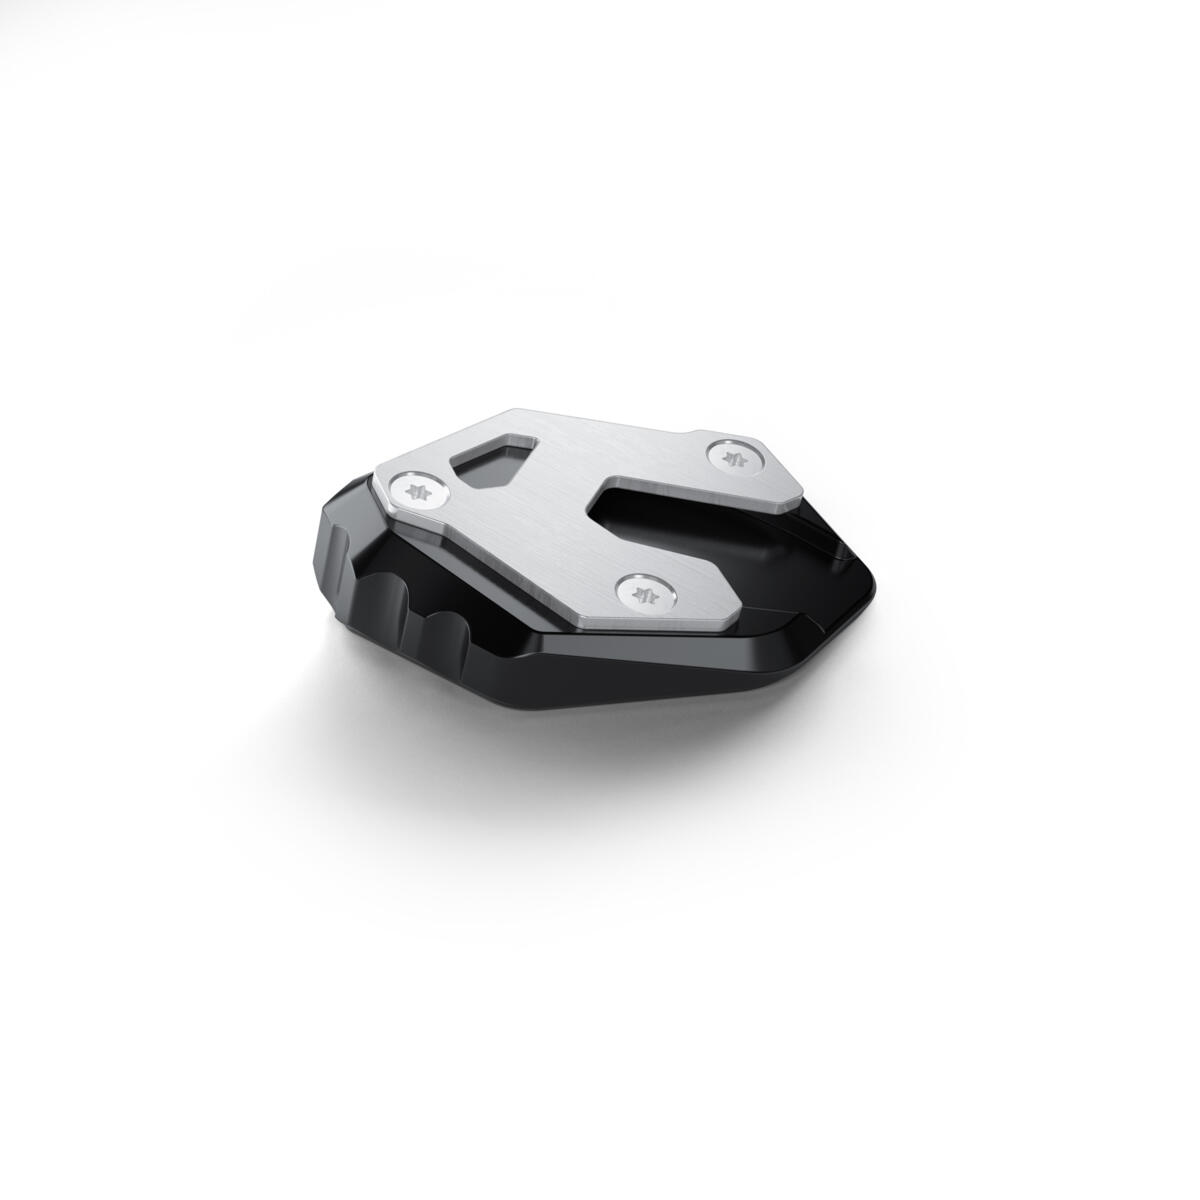 Huippuvarusteet tyylikkääseen ja toiminnalliseen matkantekoon TRACER 9:llä. Korkea tuulilasi, tuulilasin levennysosa, kahvanlämmittimet ja Comfort-lämpöistuin parantavat ajomukavuutta pitkillä ajoreissuilla. TRACER 9 GT:n tyylikkäät sivulaukut ja niiden kanssa yhteensovitettu takalaukku kuljettavat varusteesi kätevästi mukana. USB-laturi pitää puhelimesi ladattuna helposti ja rengaspaineiden seurantatyökalu varmistaa, että rengaspaineet pysyvät kunnossa. Paketti sisältää myös telineen navigaattorin turvallista kiinnittämistä varten. Sivujalan jatke parantaa pysäköidyn moottoripyörän vakautta kaikilla pinnoilla. Jäähdytin pysyy suojassa kiveniskuilta ja irtosoralta jäähdyttimen suojan ansiosta. Kaatumarauta suojaa moottoria moottoripyörän kaatumistilanteissa. LED-sumuvalot optimoivat ajoturvallisuuden parantamalla näkyvyyttä huonoissa ajo-olosuhteissa. Haluat varmasti myös matkustajasi voivan nauttia ajokokemuksesta yhtä paljon kuin sinä. Matkustajan Comfort-istuin ja selkänoja varmistavat mukavan kyydin.